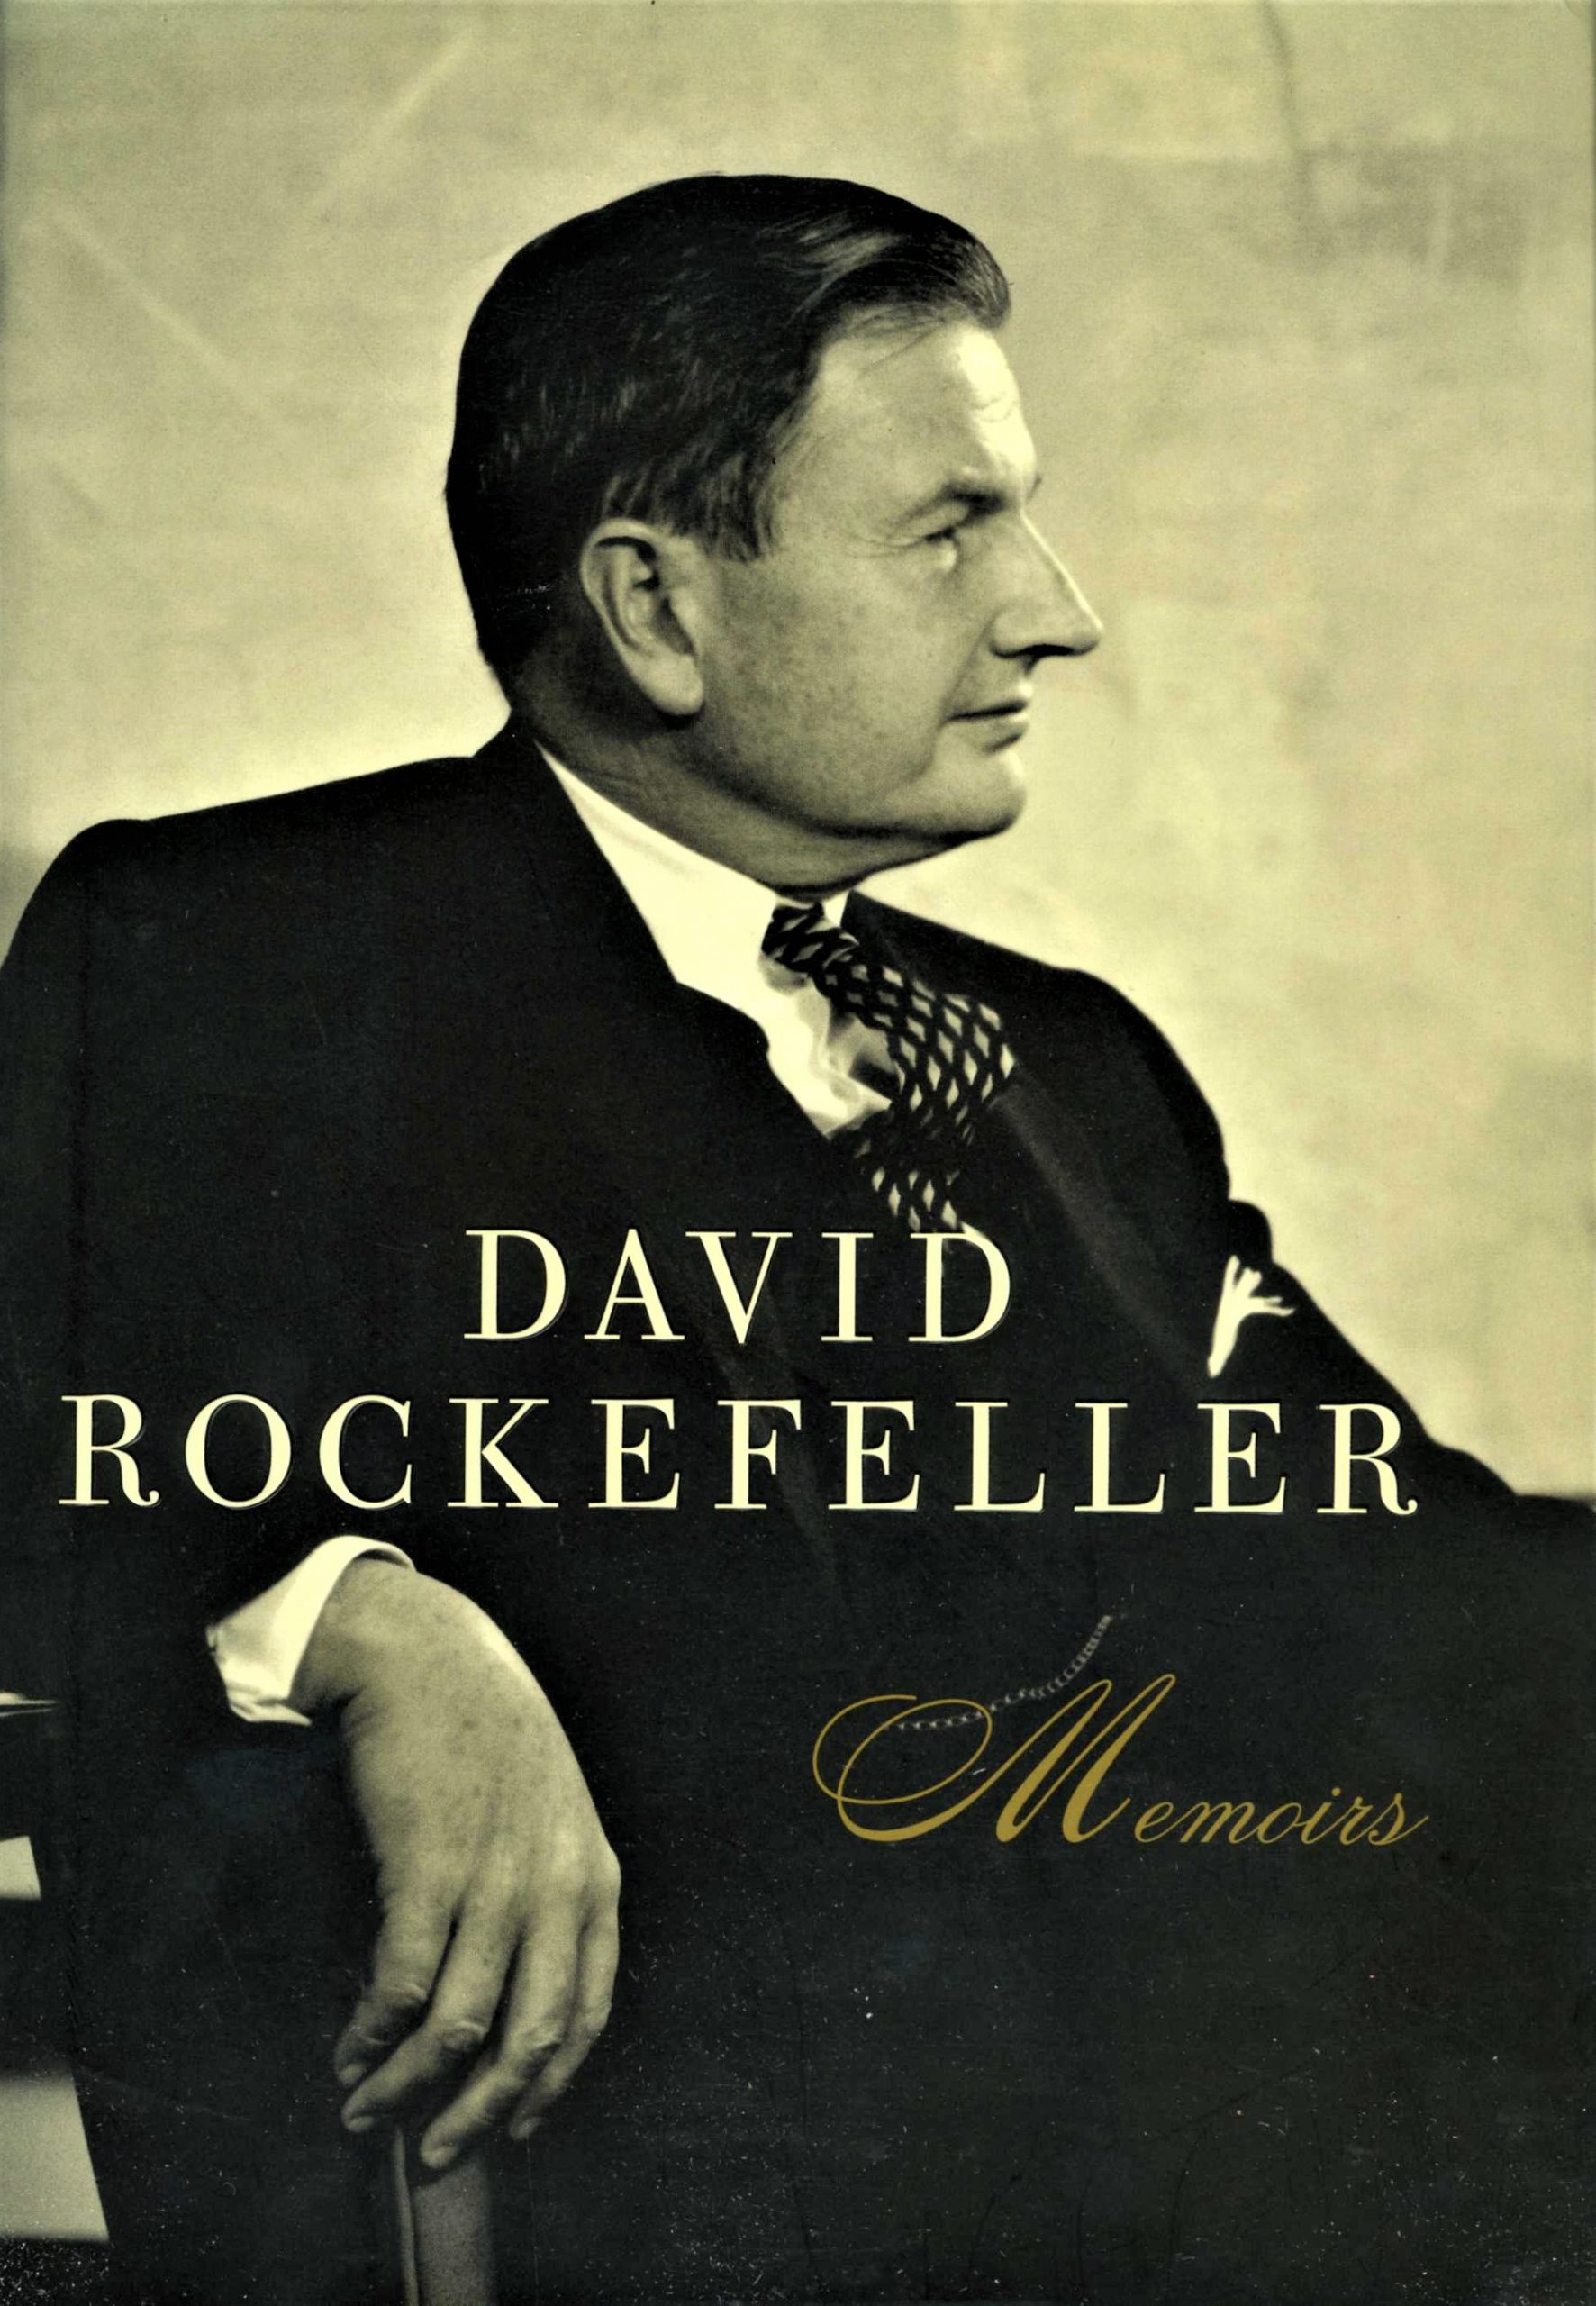 John D. Rockefeller, 1839-1937